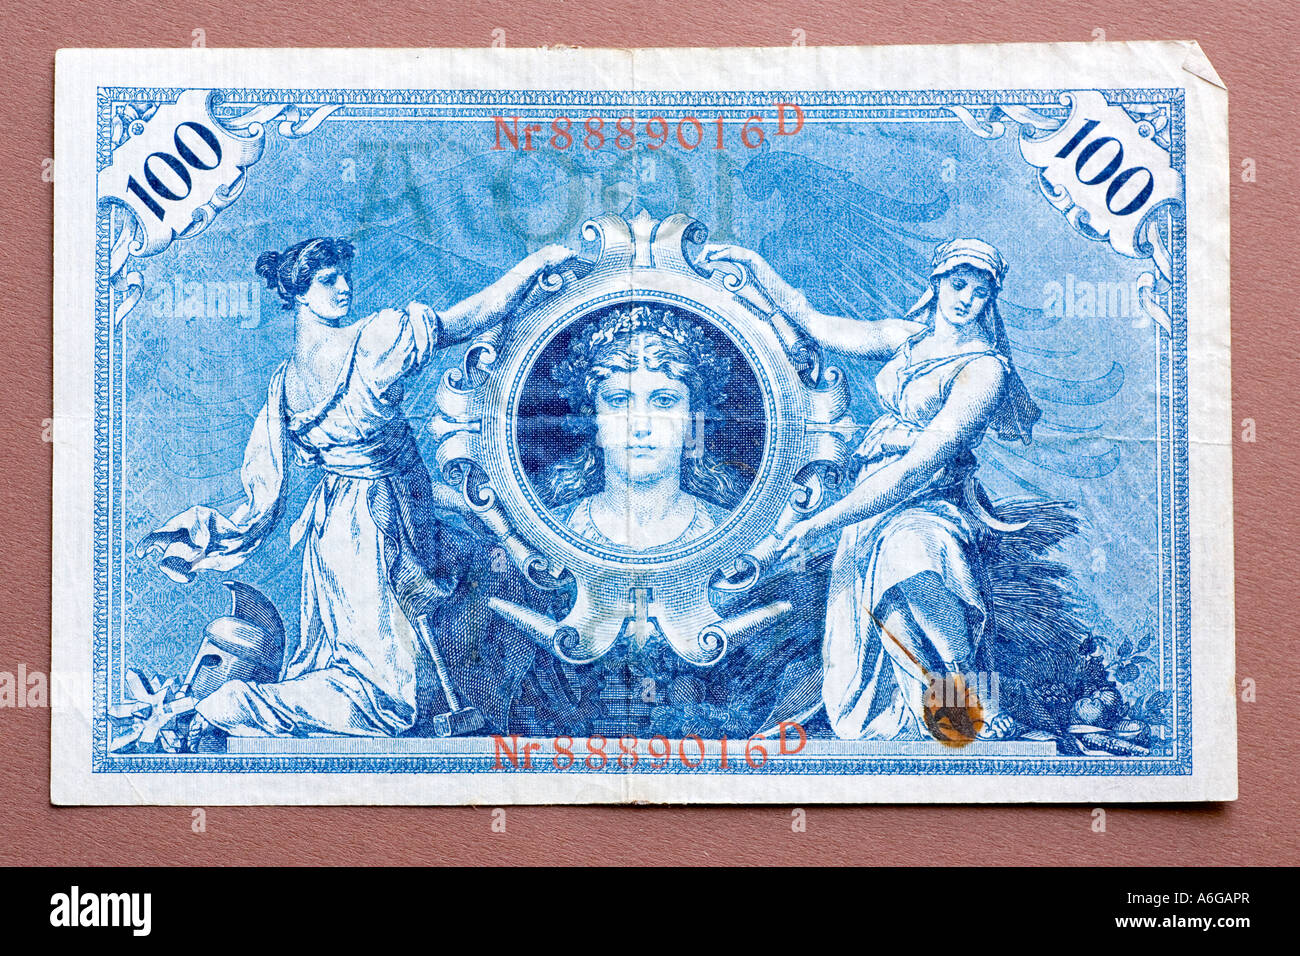 Alte deutsche Banknote 1908 Stockfoto